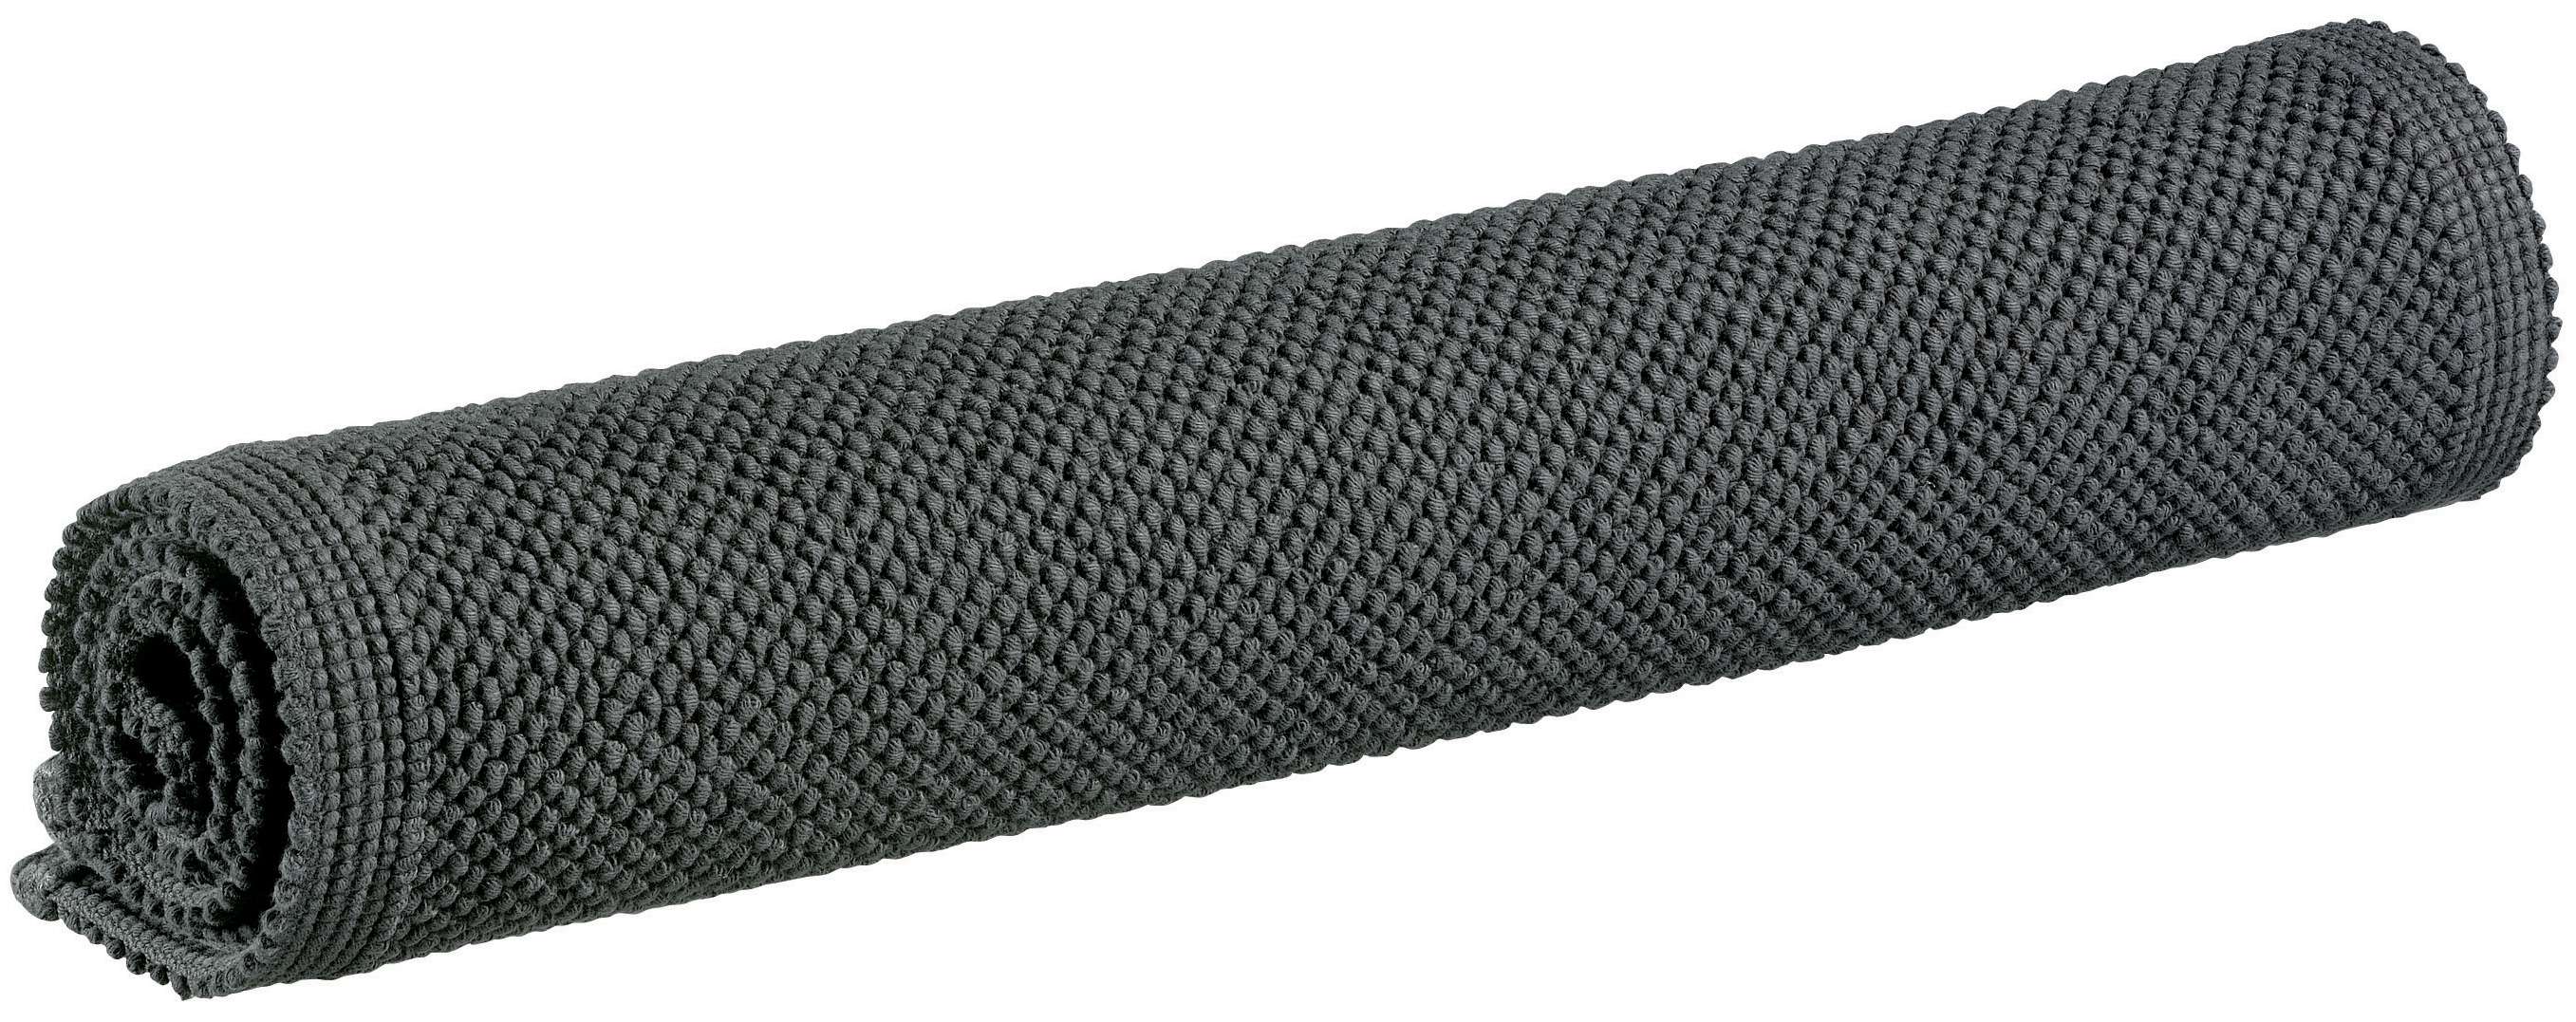 Badematte Etia 54x64cm, carbone